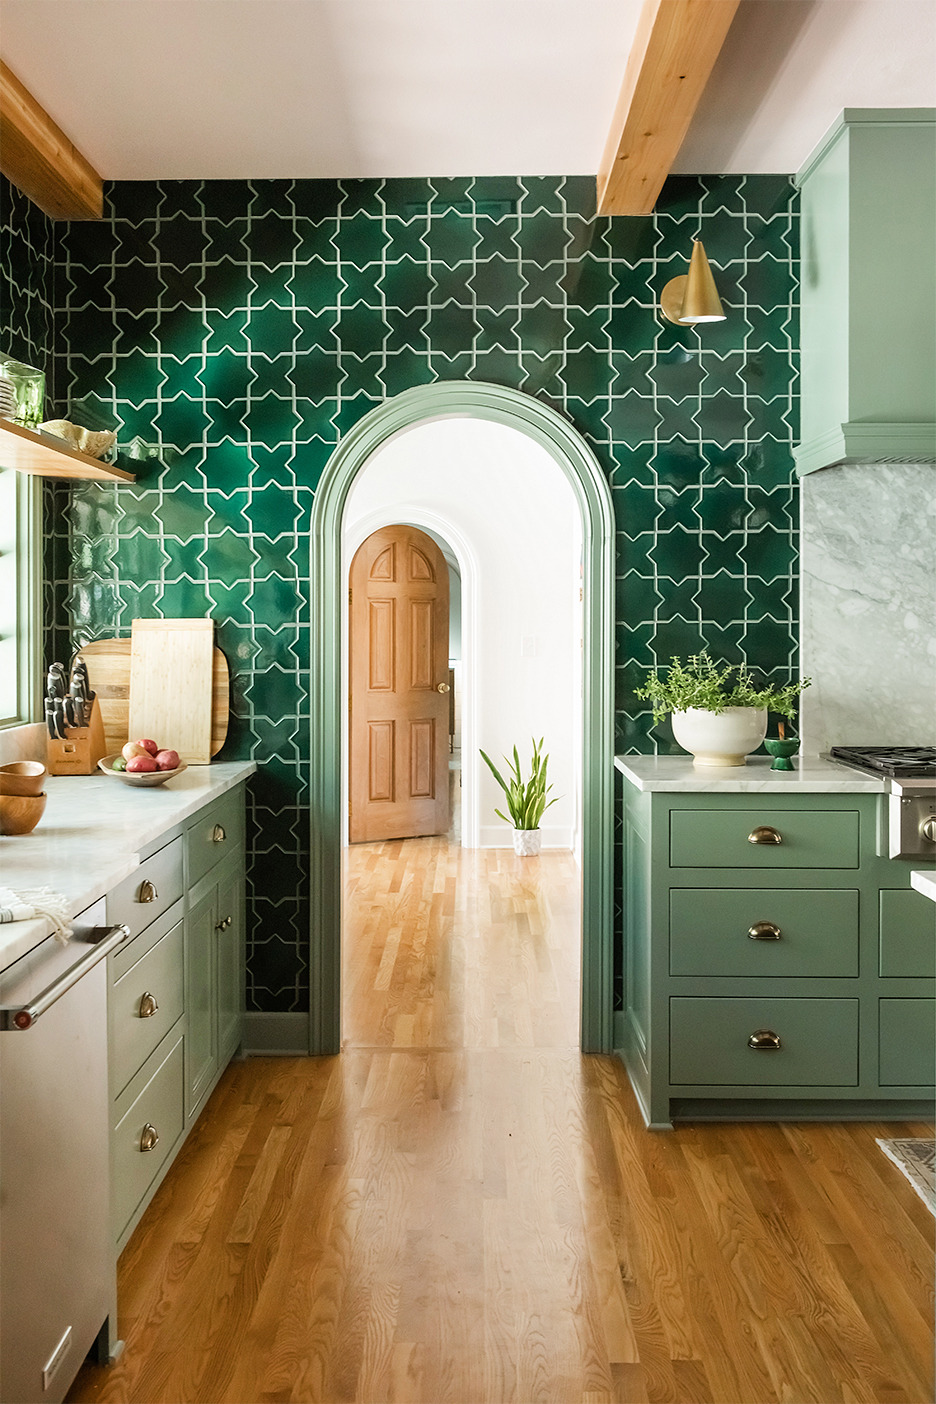 Phòng bếp thiết kế theo phong cách cổ điển với mái vòm cong mềm mại ở cửa chuyển tiếp. Gạch màu xanh ngọc lục bảo được ốp xung quanh bức tường này, kết hợp với hệ tủ bếp màu xanh bạc hà và sàn gỗ cho cái nhìn hài hòa.